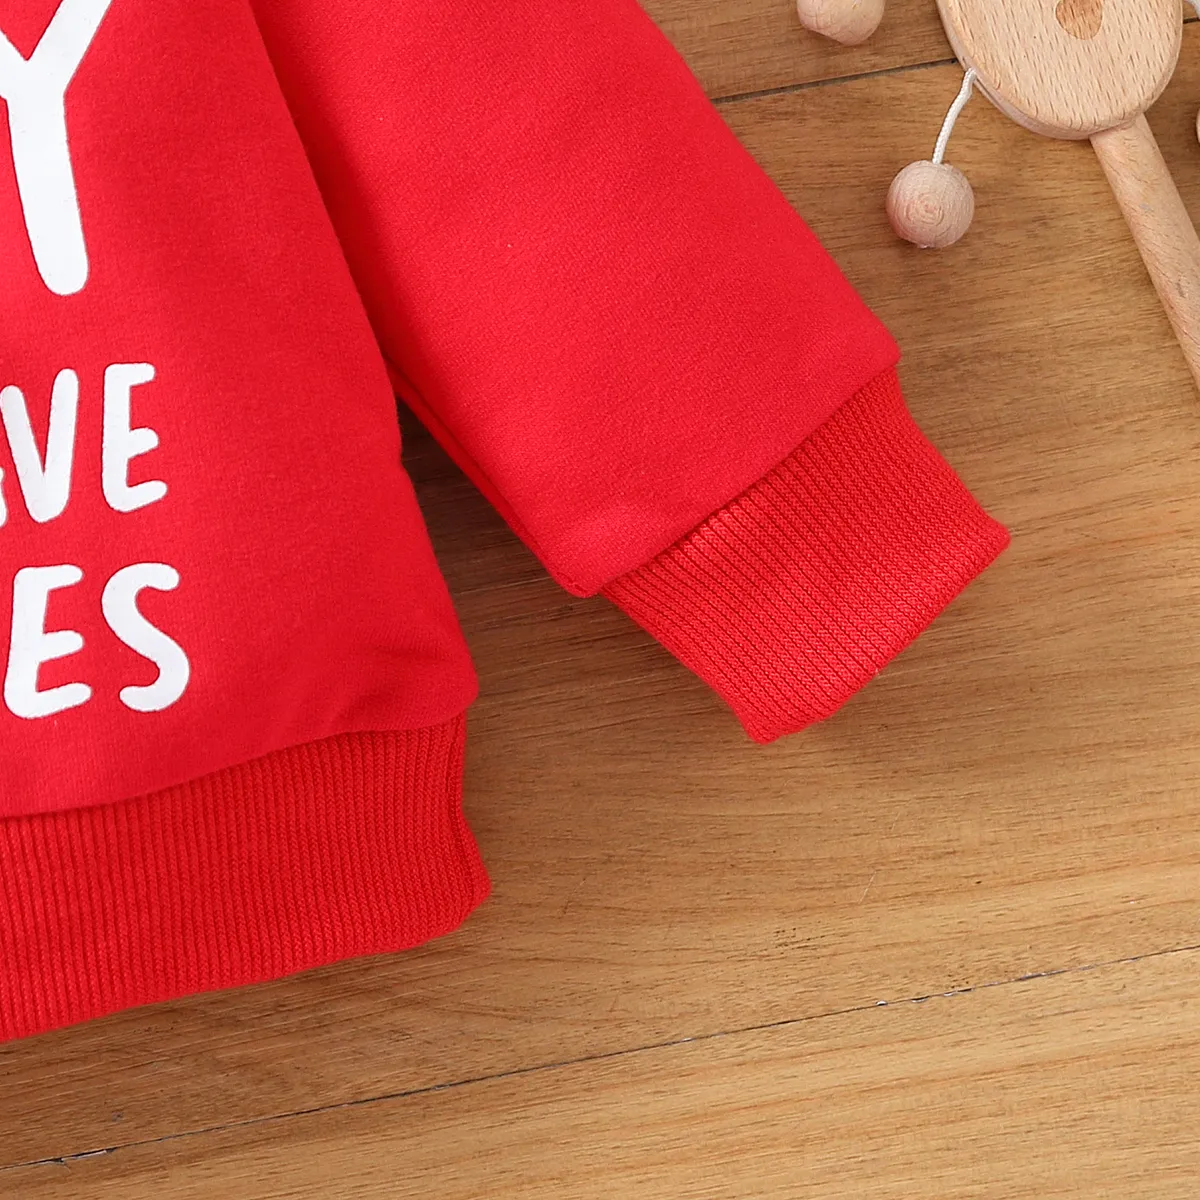 Baby Boy/Girl  Letter Print Sweatshirt Red big image 1